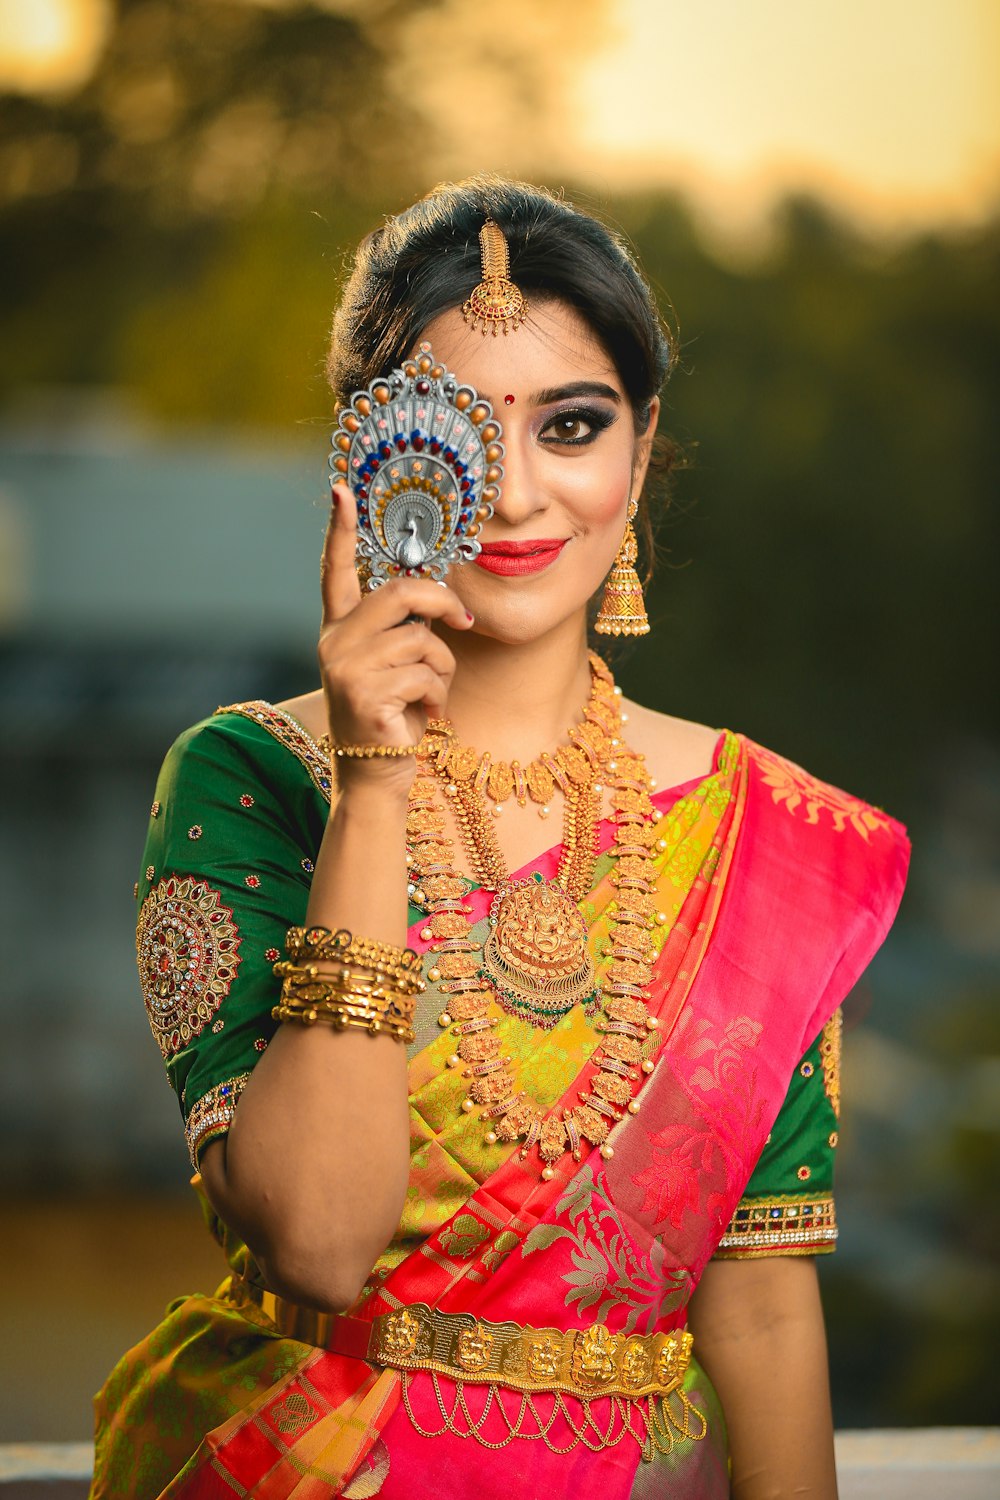 Mulher em verde, dourado, e vestido sari vermelho escondendo seu olho direito enquanto sorri